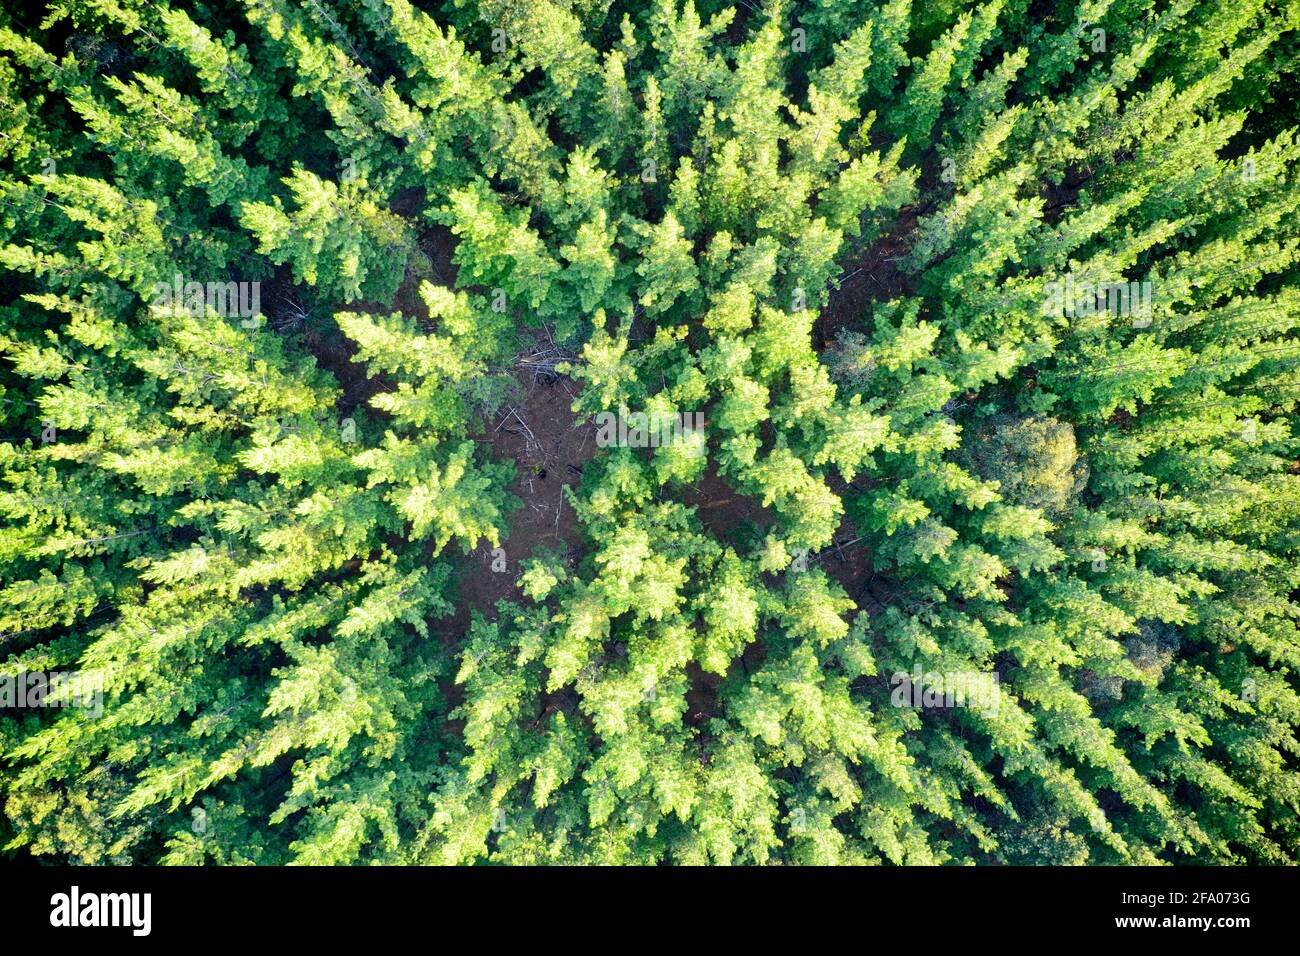 Vue de drone de la forêt de pins formant des patrons dans la nature Balingup, Australie occidentale. Banque D'Images